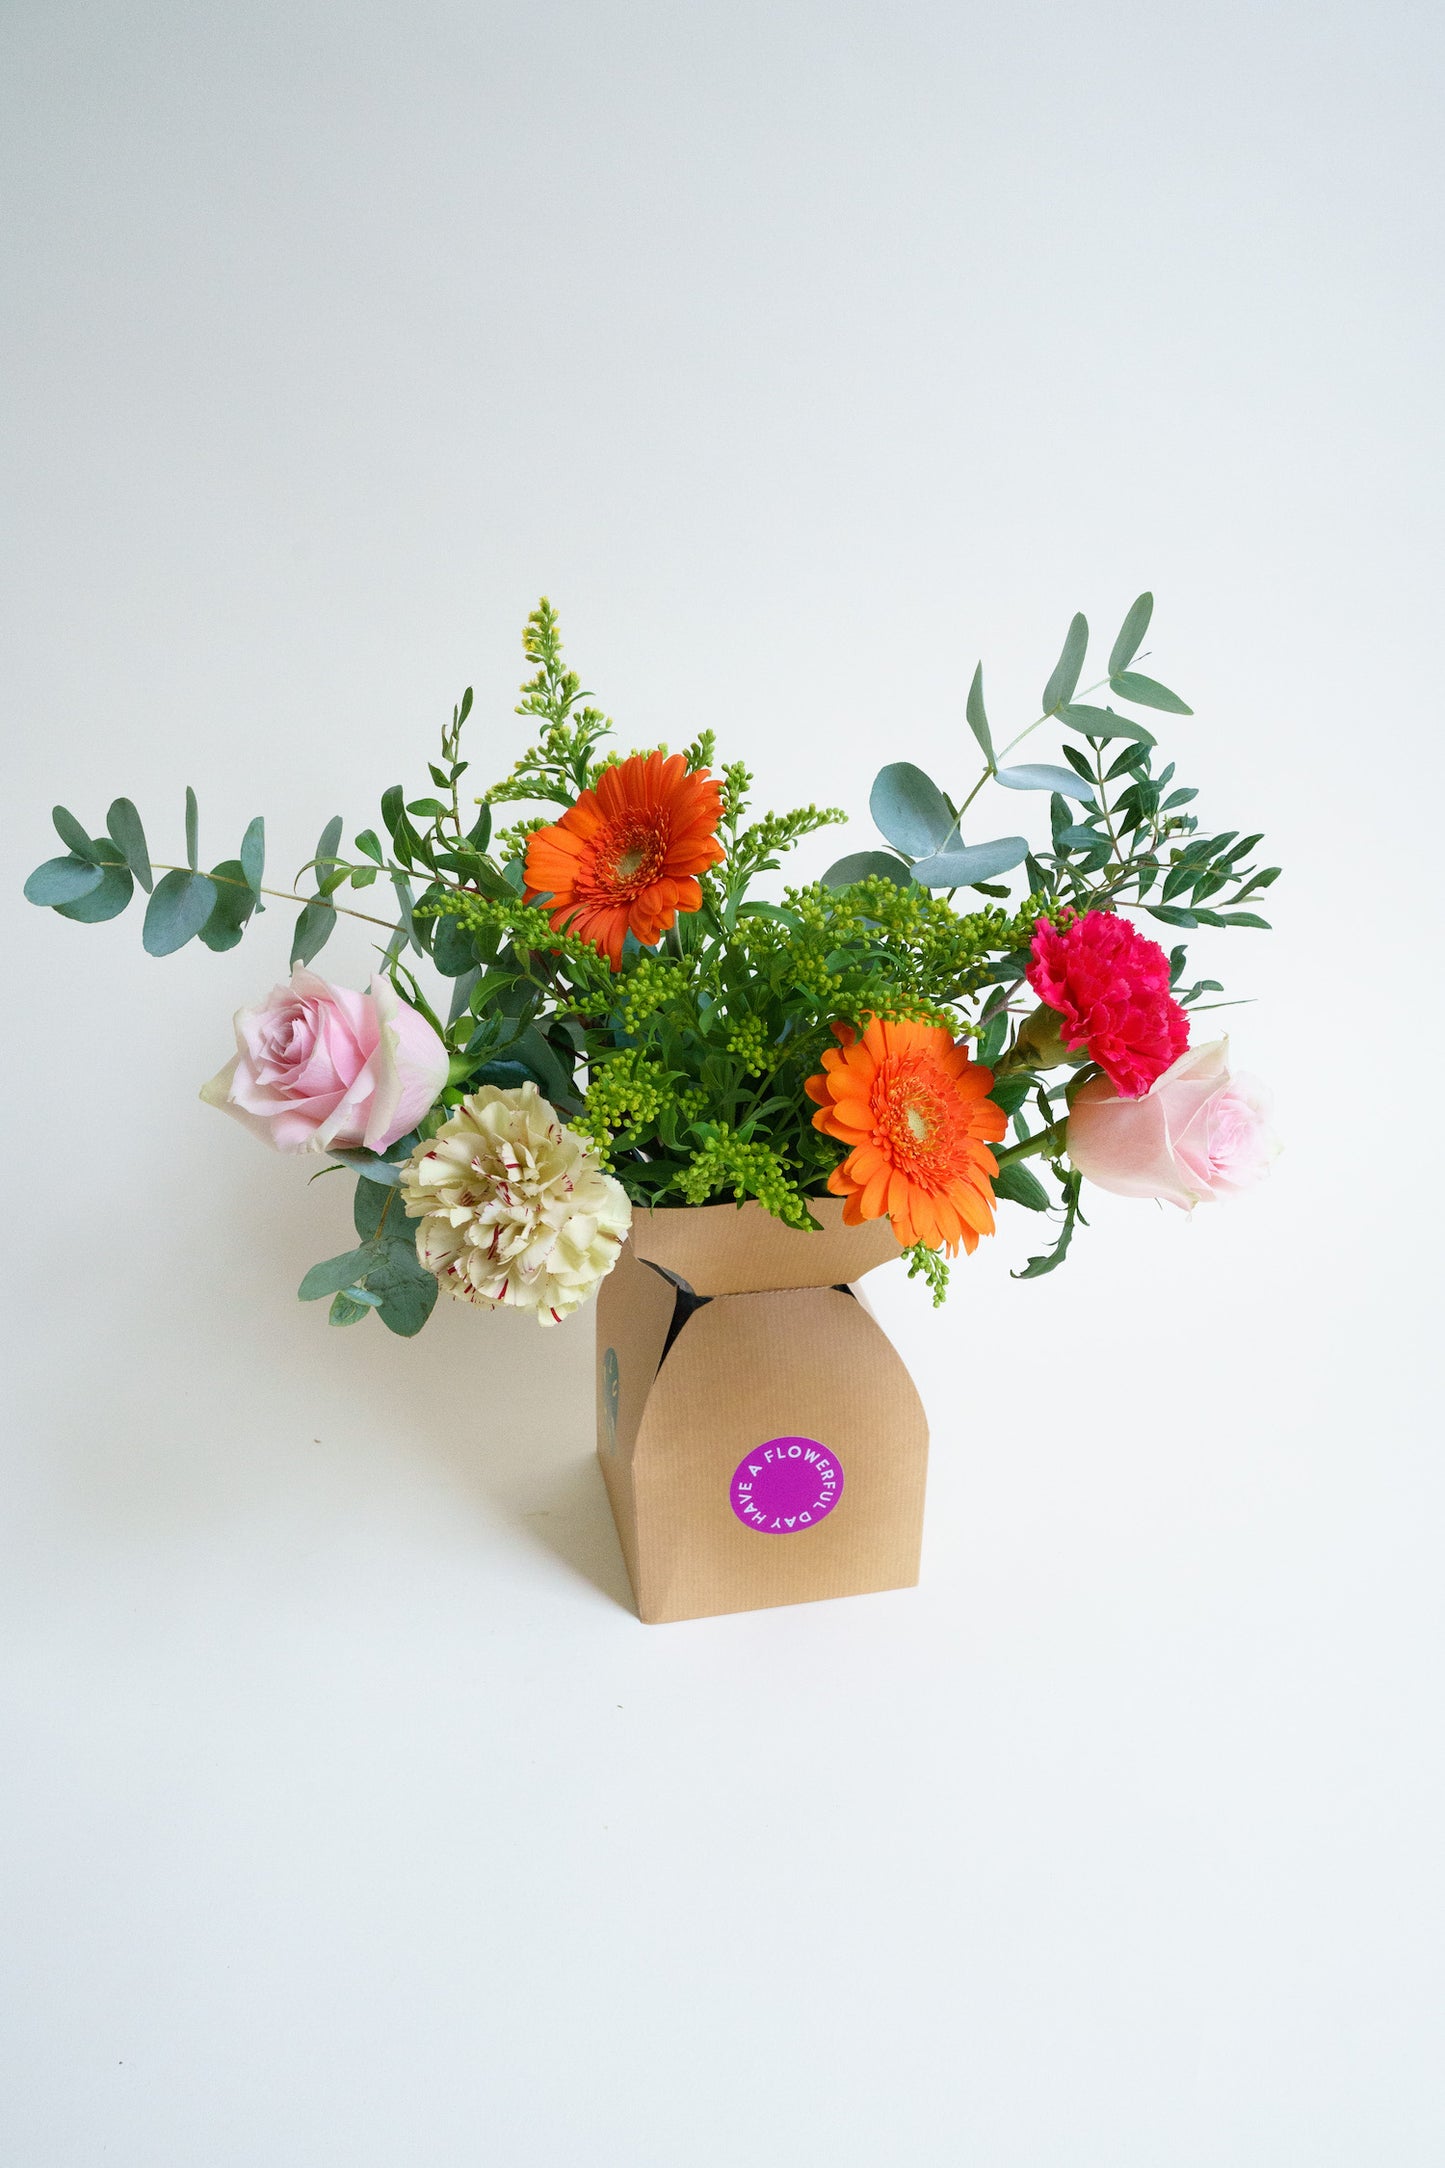 Cadeau per post bestellen? Wij bezorgen die bloemencadeau inclusief vaas!